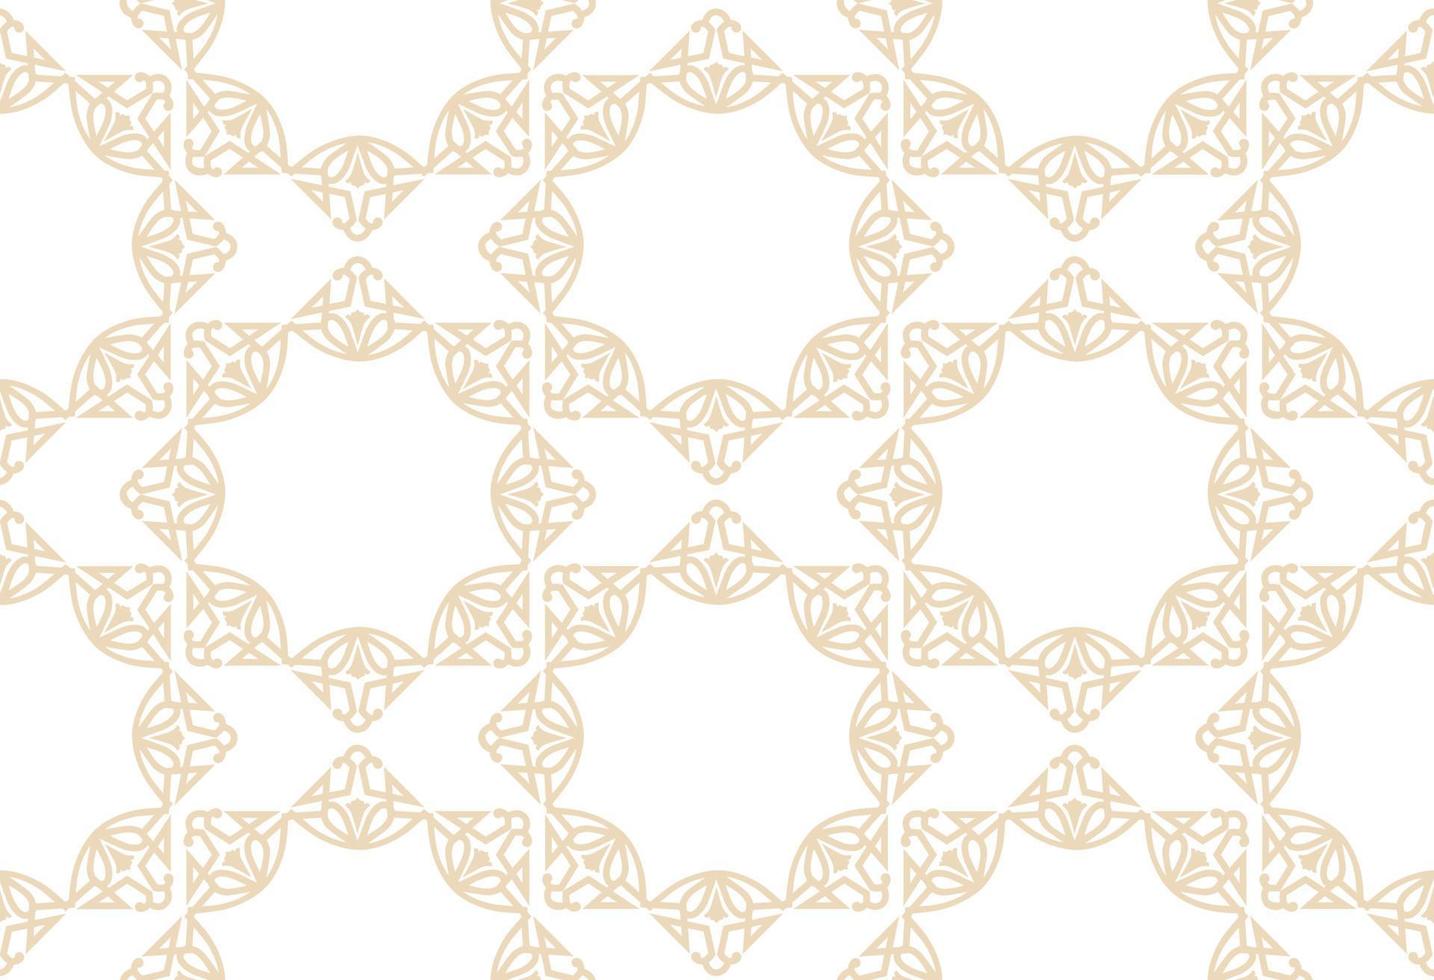 modello astratto senza cuciture. fondo ornamentale delle mattonelle diagonali floreali del mosaico. ornamento di linea musulmana in stile arabo orientale vettore